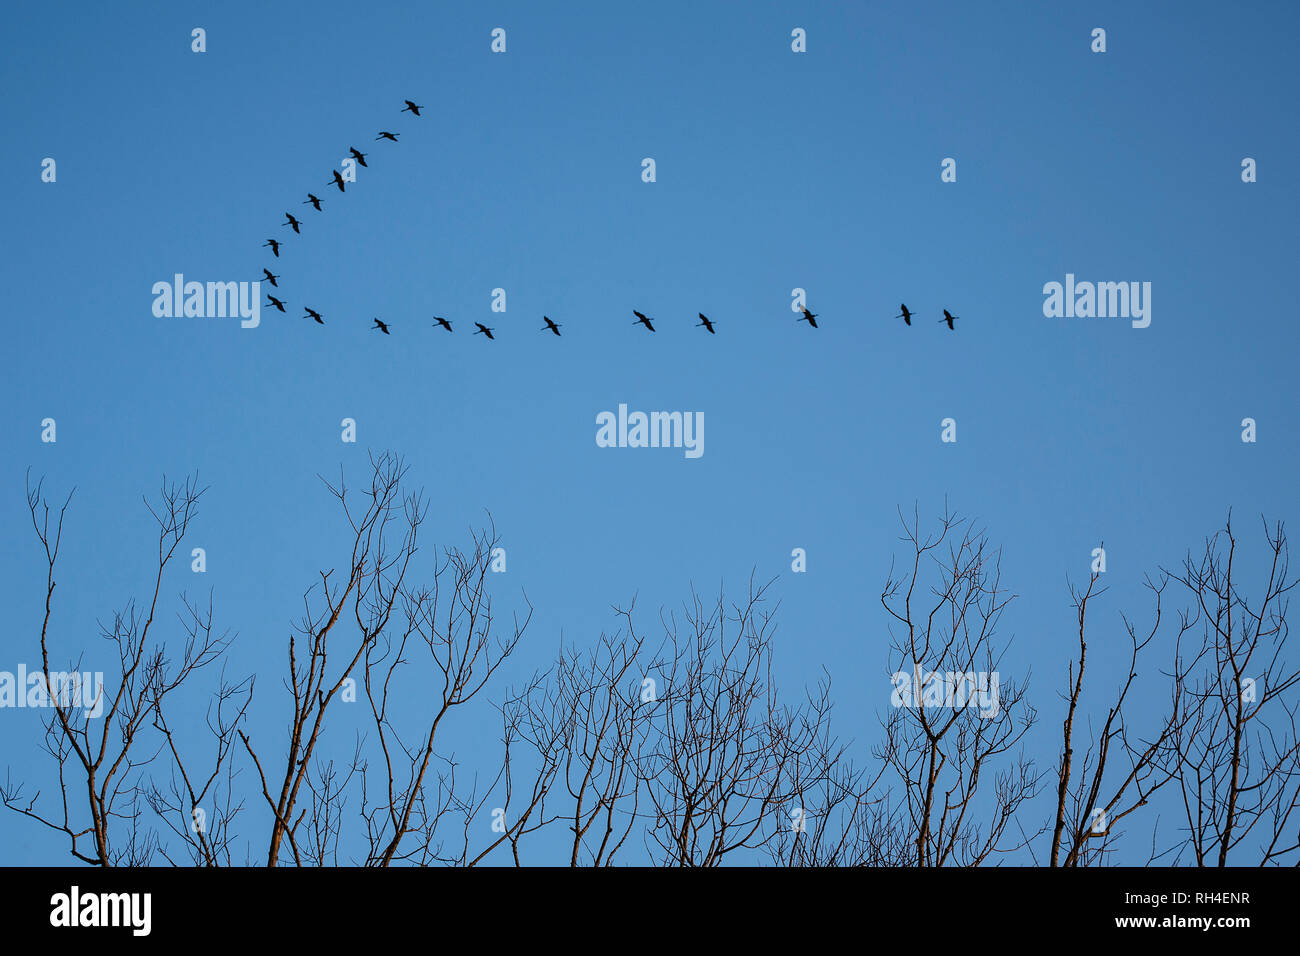 Los pájaros que vuelan en el cielo azul Foto de stock